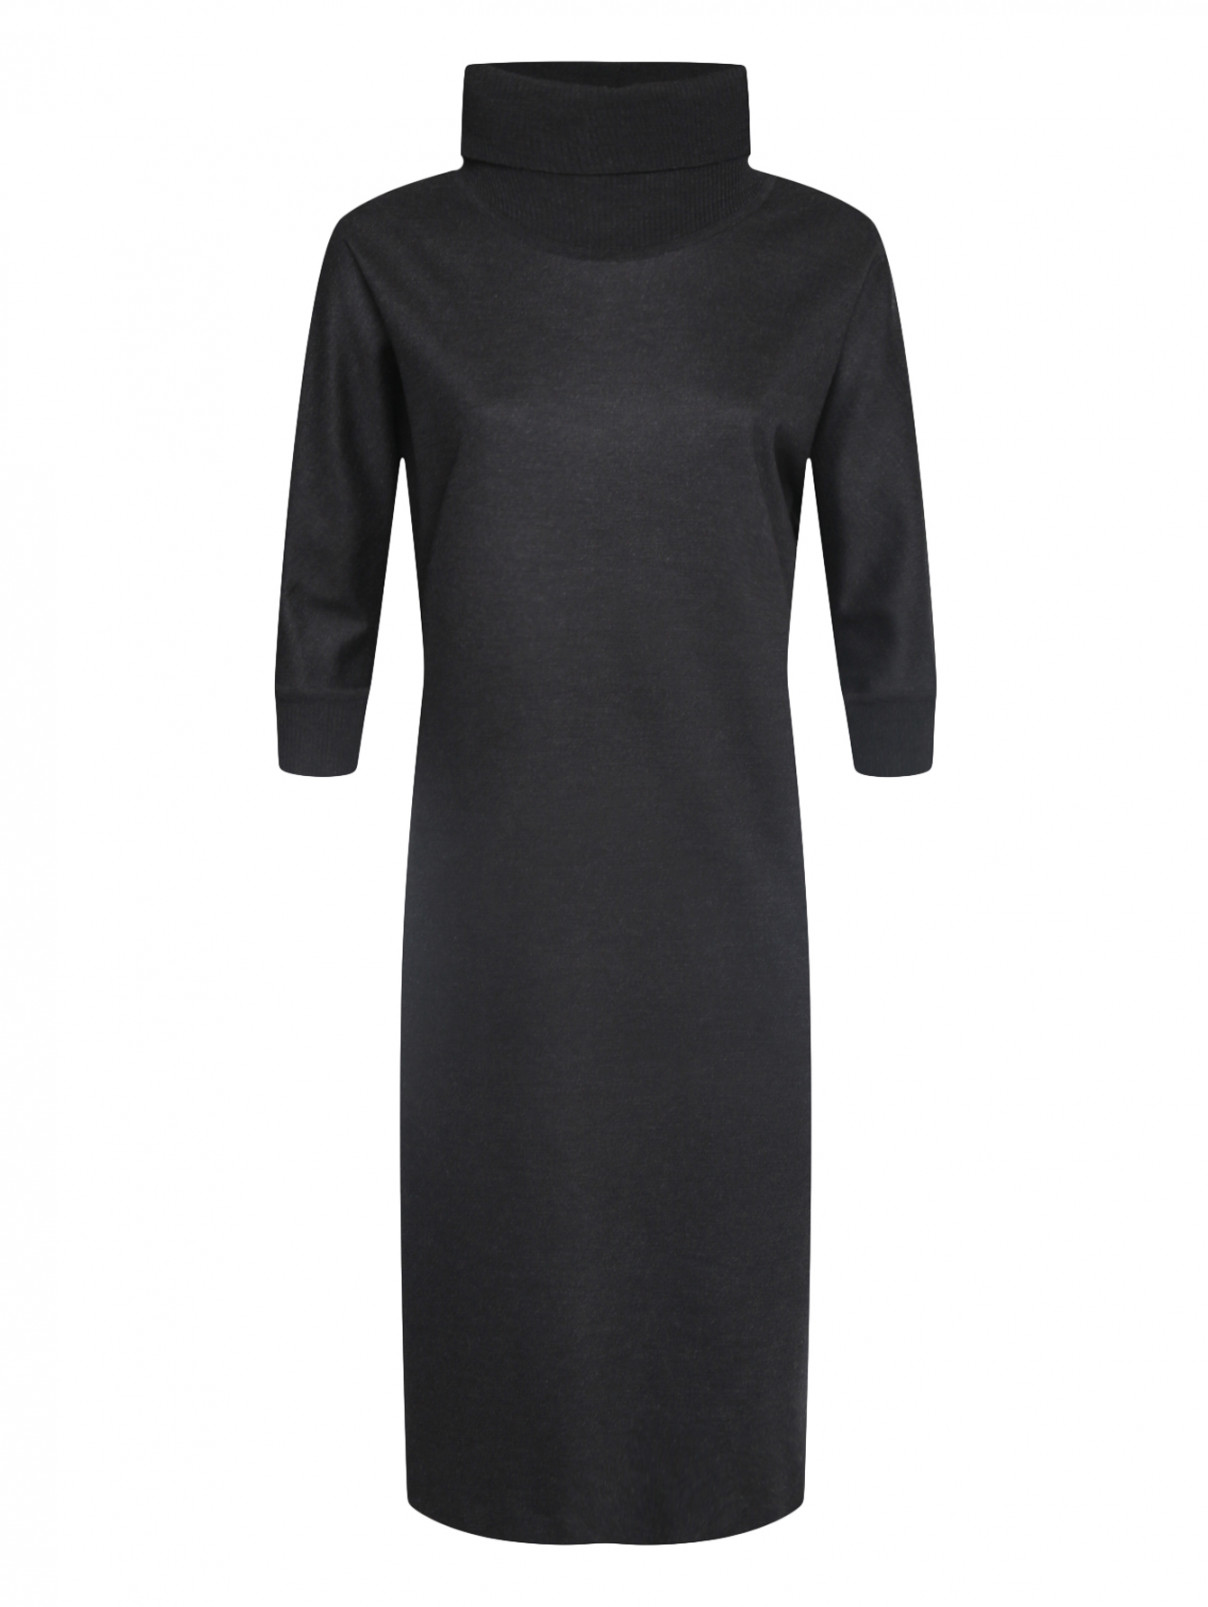 Платье из шерсти и хлопка прямого кроя с короткими рукавами Max Mara  –  Общий вид  – Цвет:  Серый